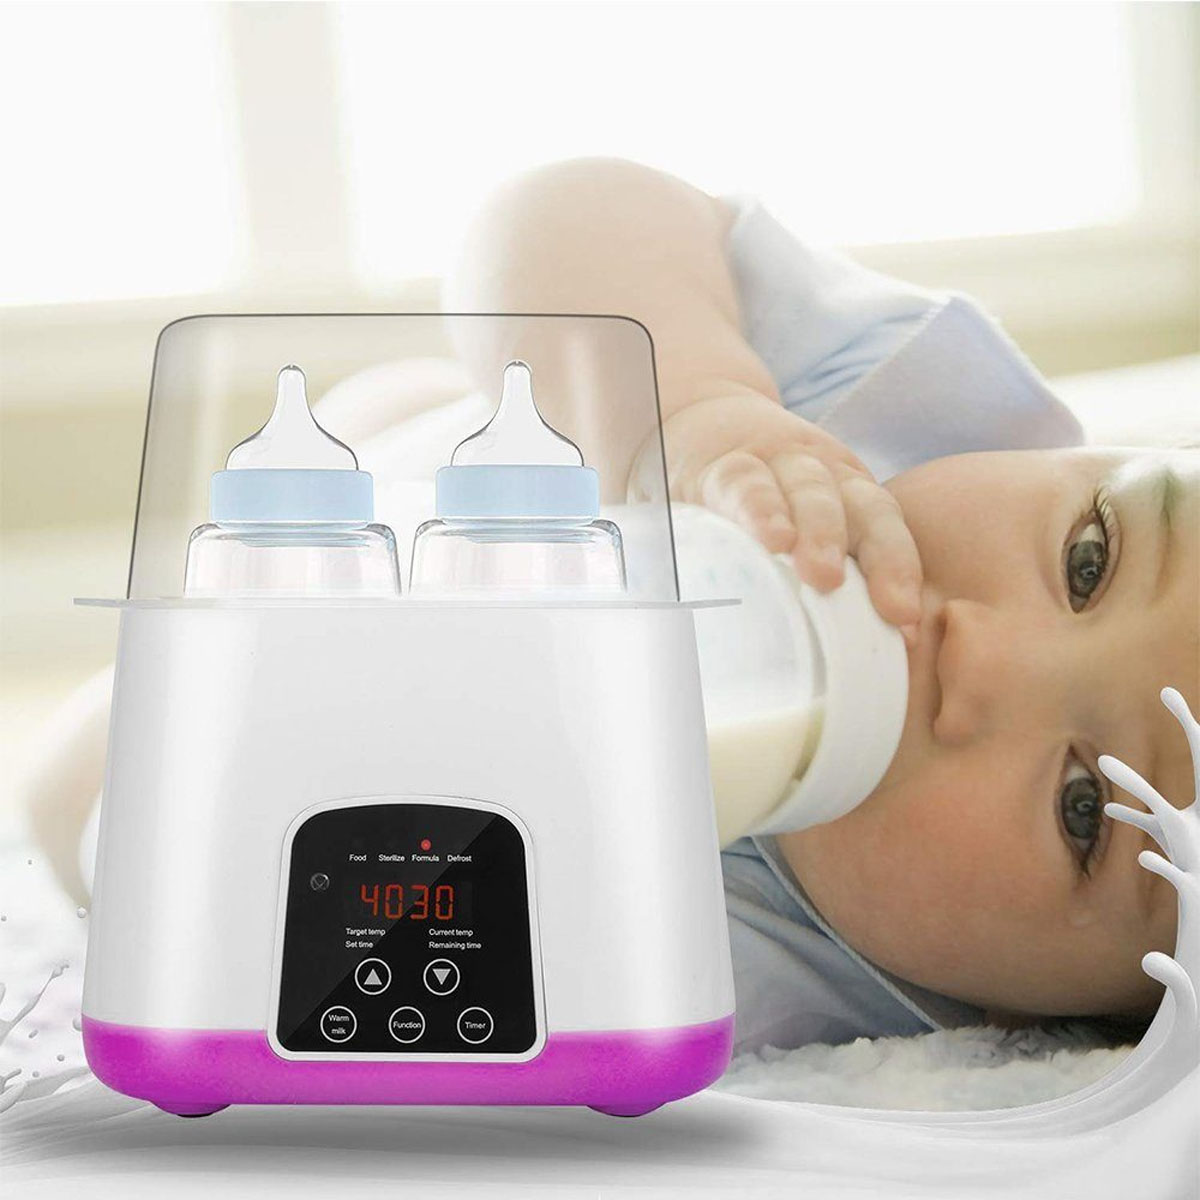 BABY JA Milcherwärmer, in Konstante 1 Weiß Babyflaschenwärmer 24h, LED-Display in Babykostwärmer, Temperatur 6